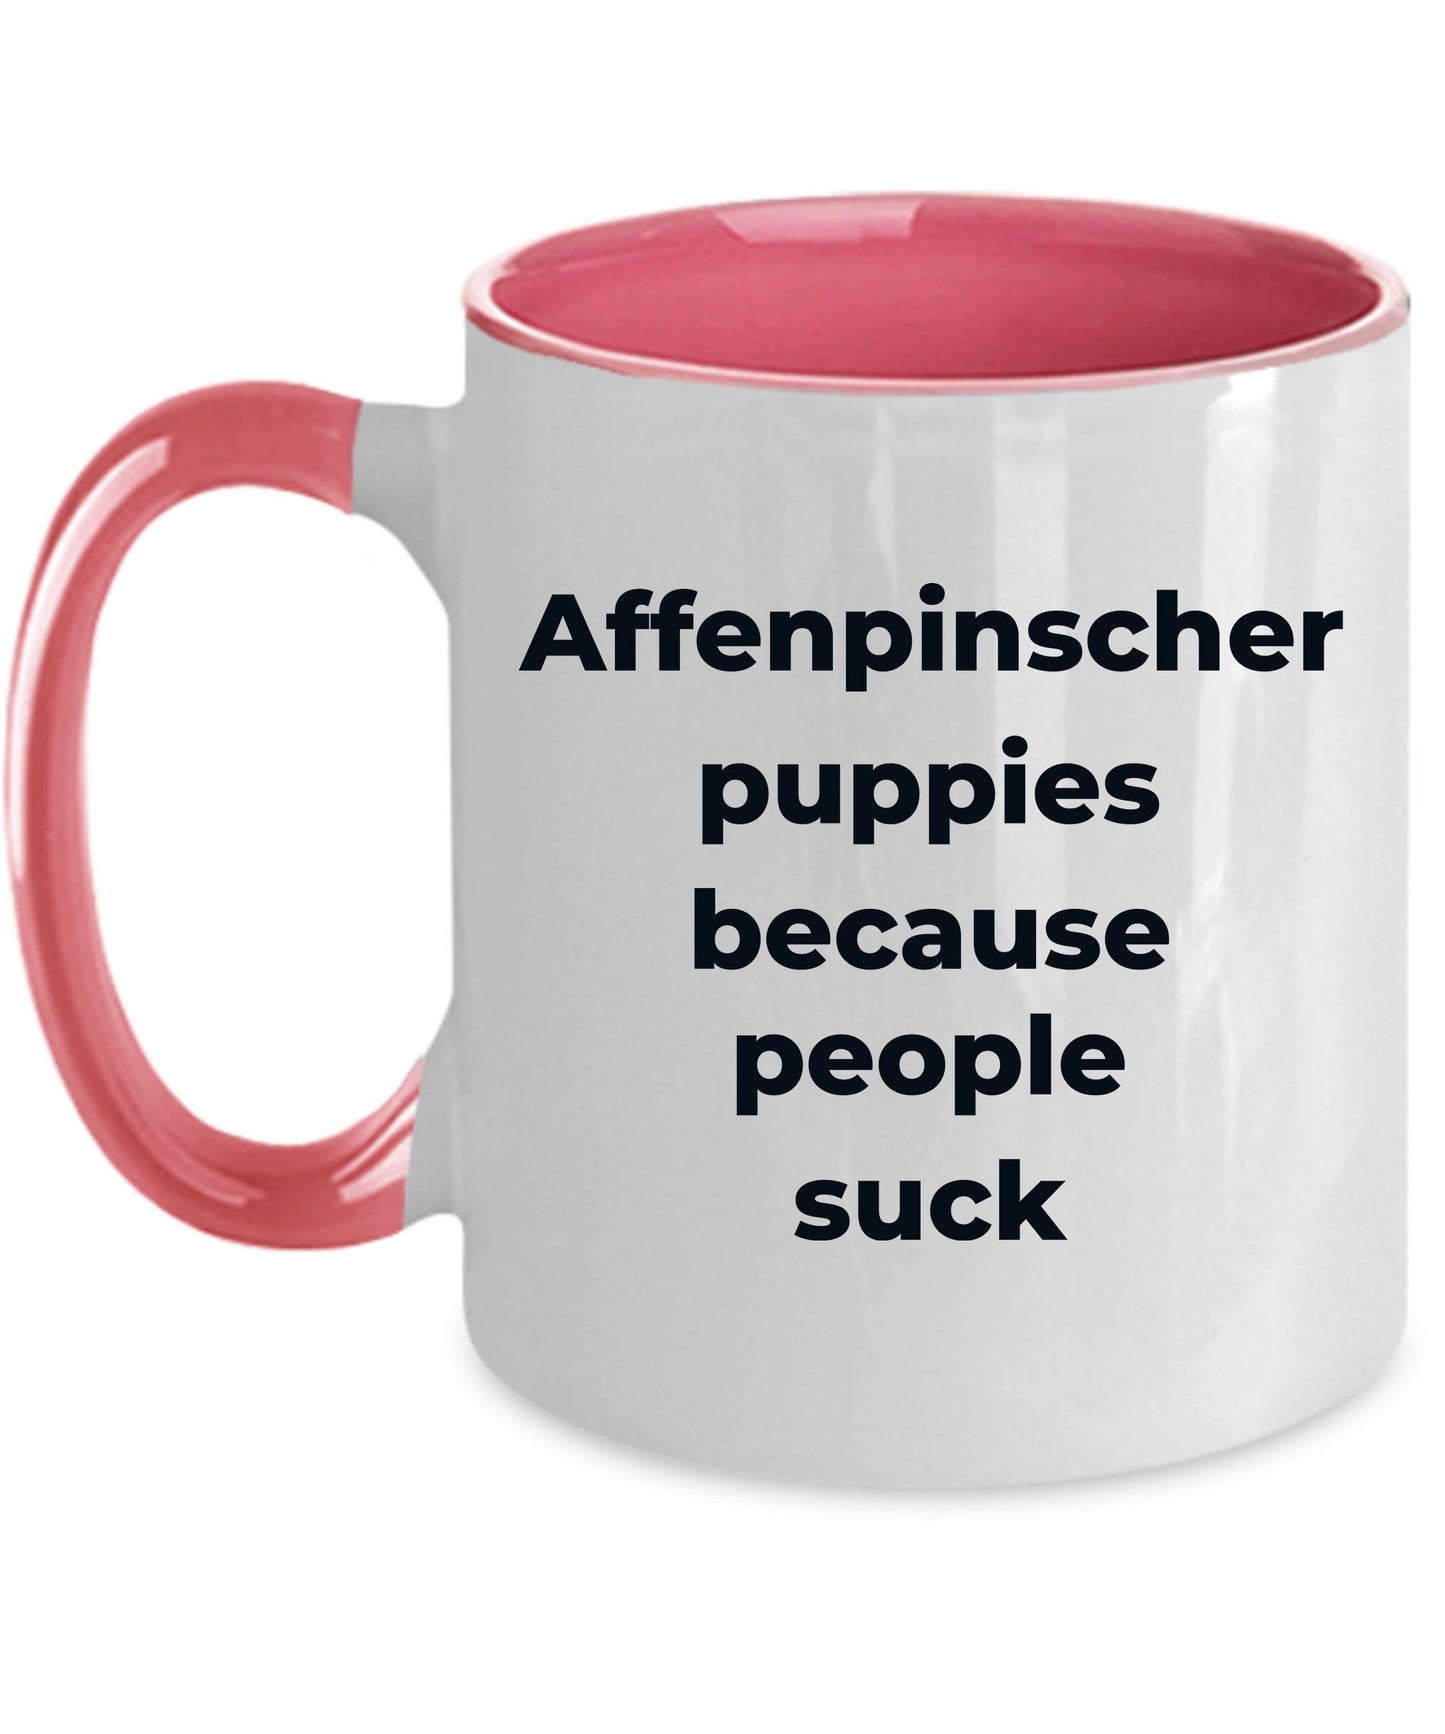 Affenpinscher dog funny coffee mug -Affenpinscher puppies because people suck